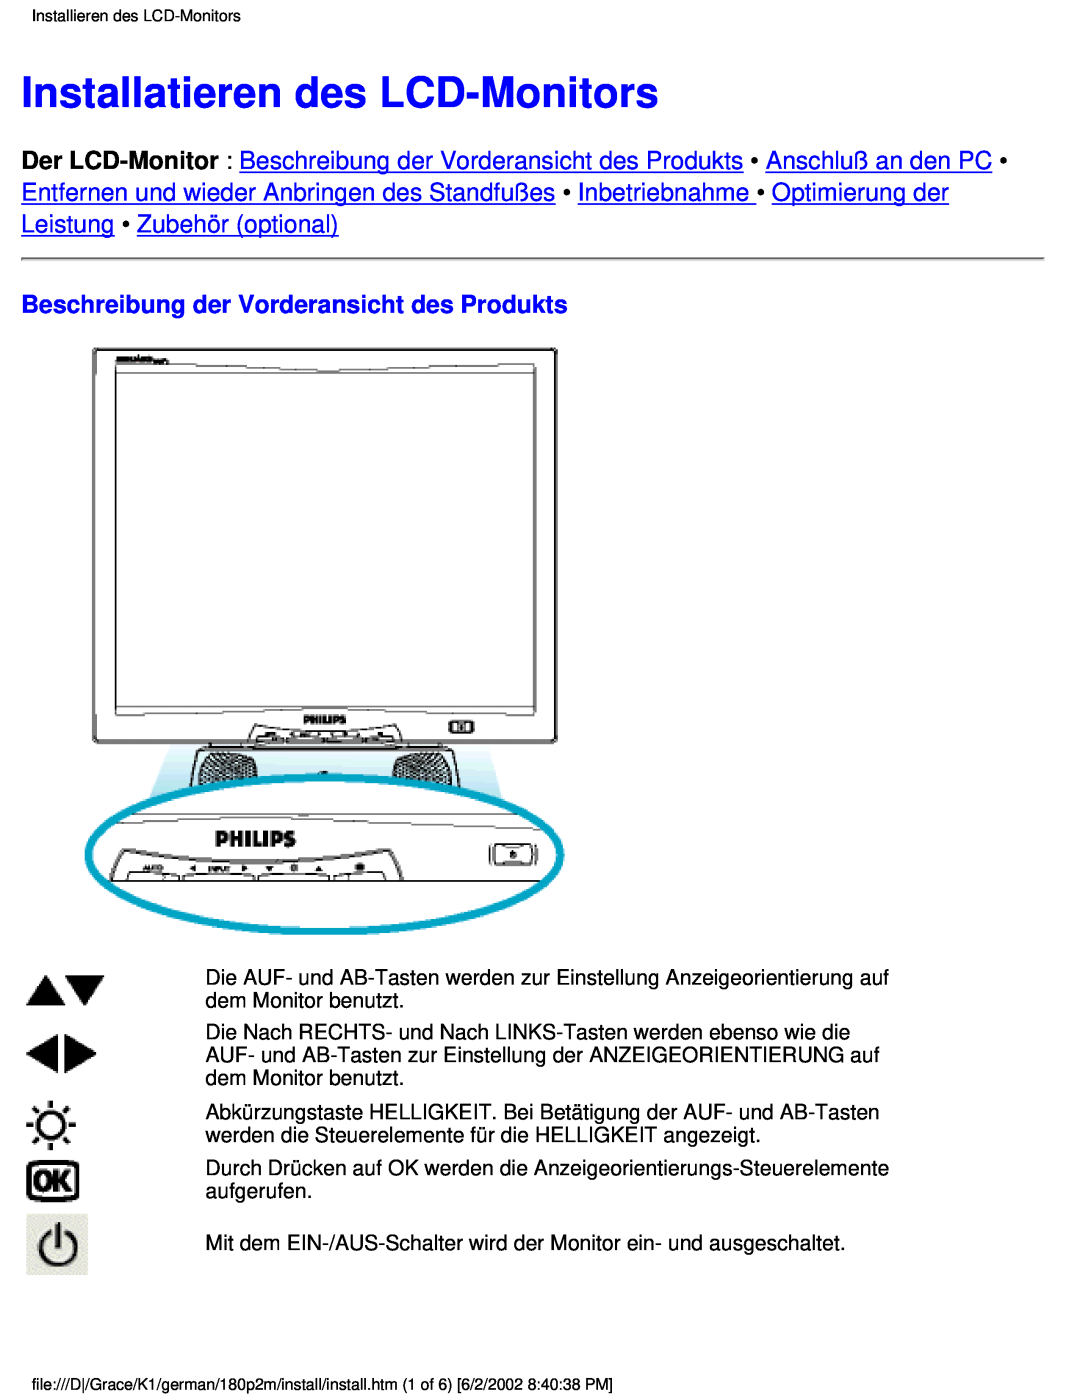 Philips 180P2G user manual Installatieren des LCD-Monitors, Beschreibung der Vorderansicht des Produkts 